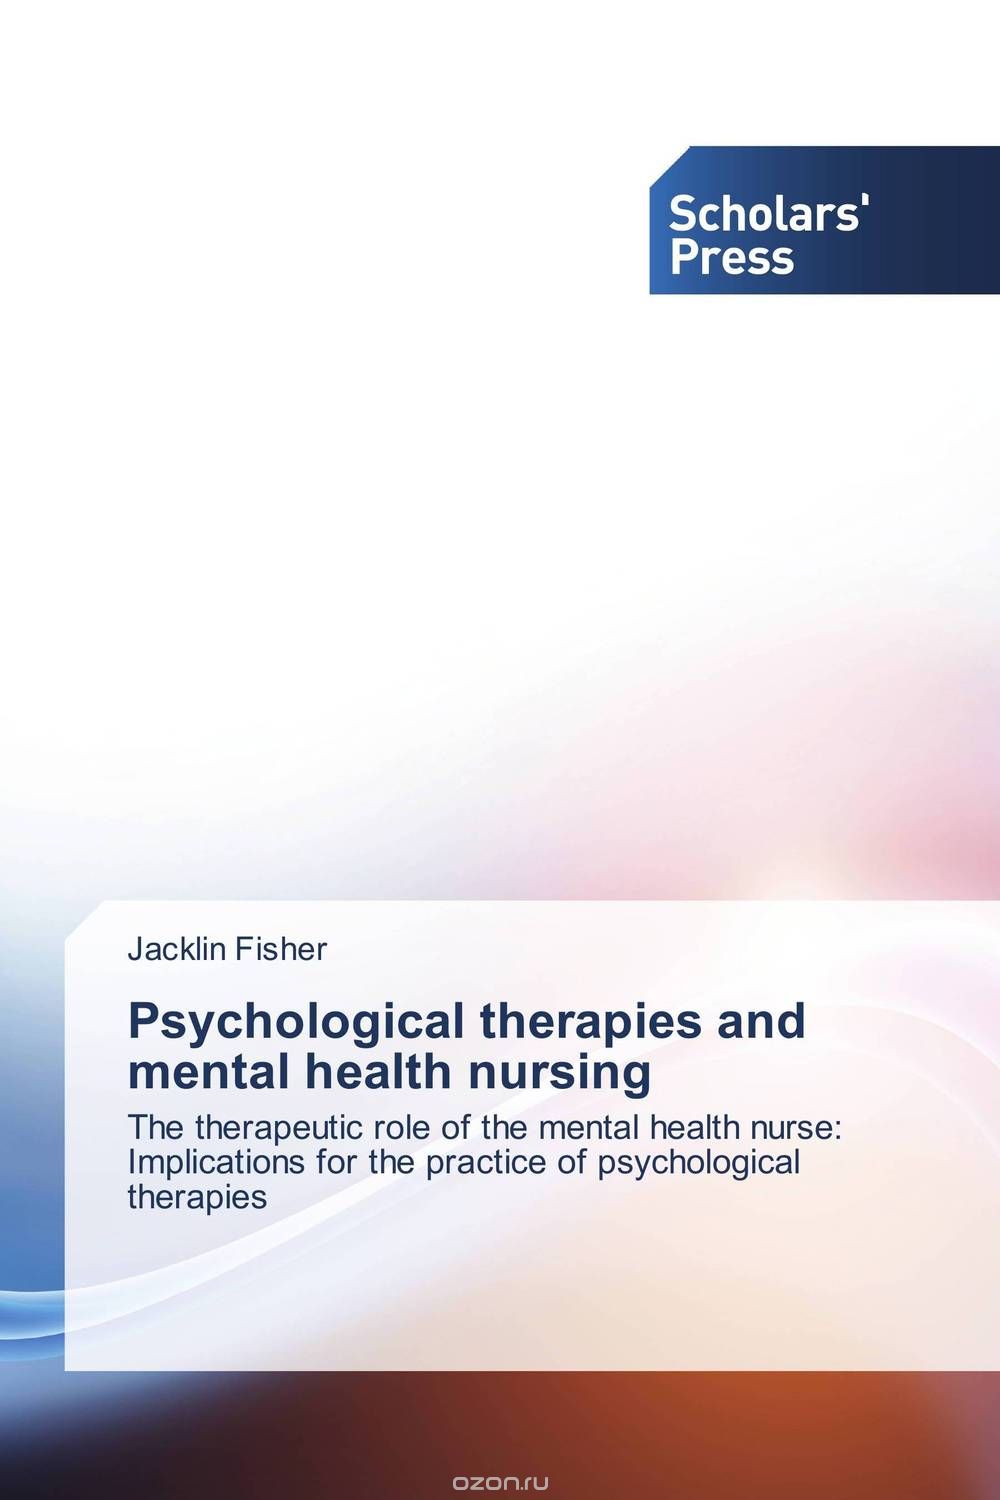 Скачать книгу "Psychological therapies and mental health nursing"